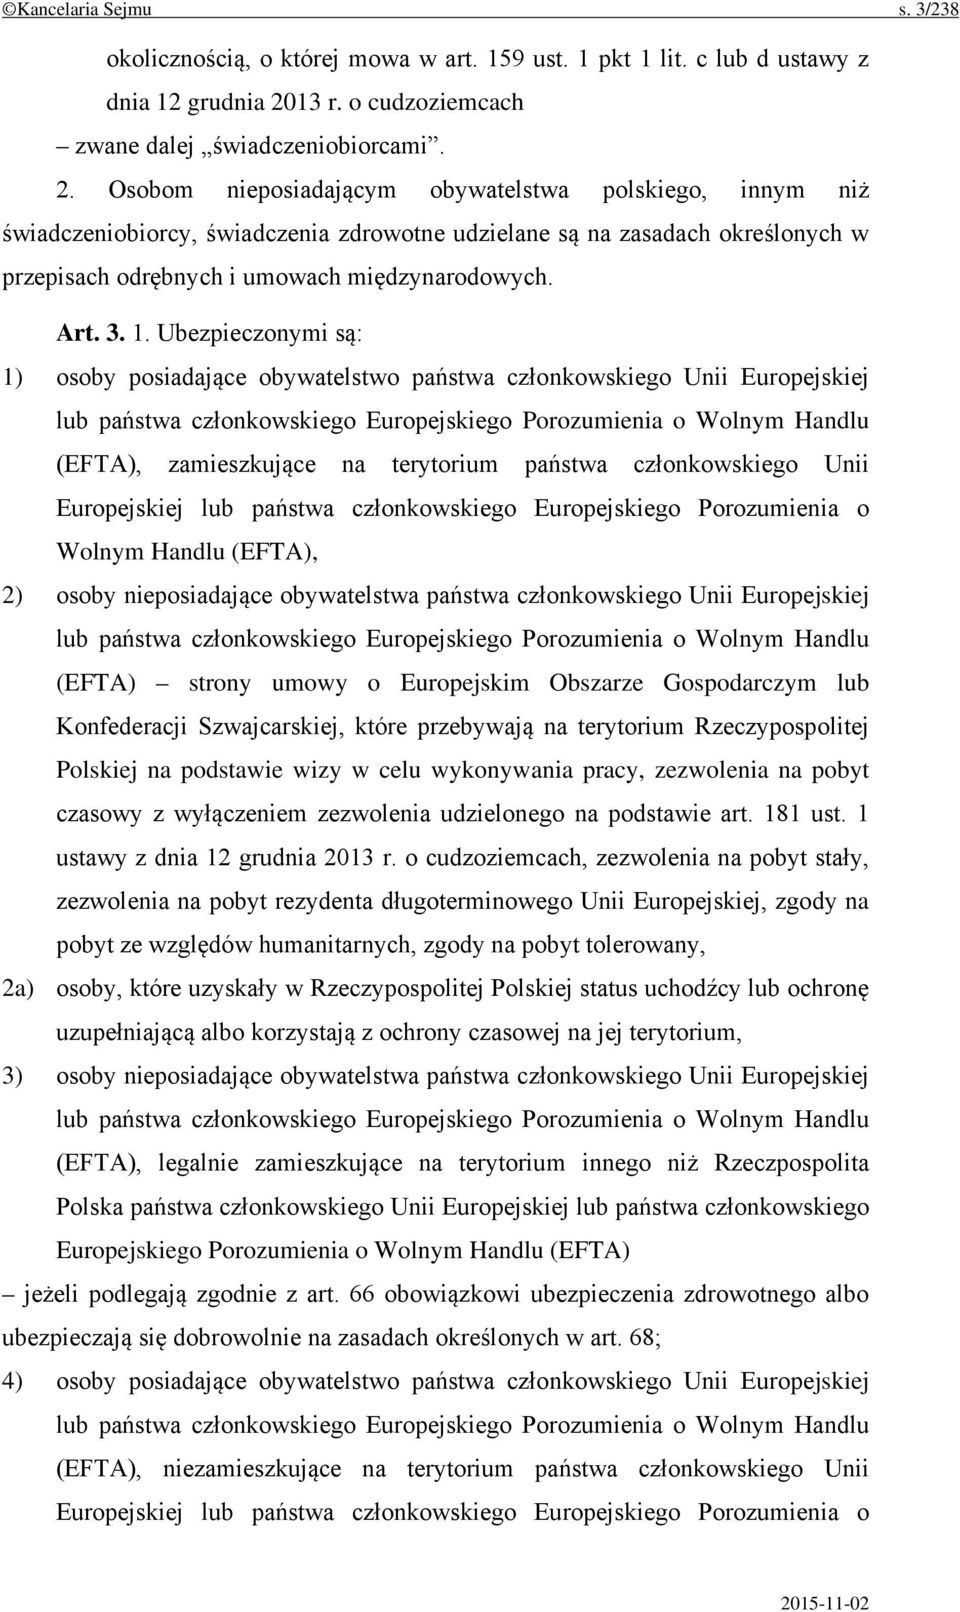 Osobom nieposiadającym obywatelstwa polskiego, innym niż świadczeniobiorcy, świadczenia zdrowotne udzielane są na zasadach określonych w przepisach odrębnych i umowach międzynarodowych. Art. 3. 1.